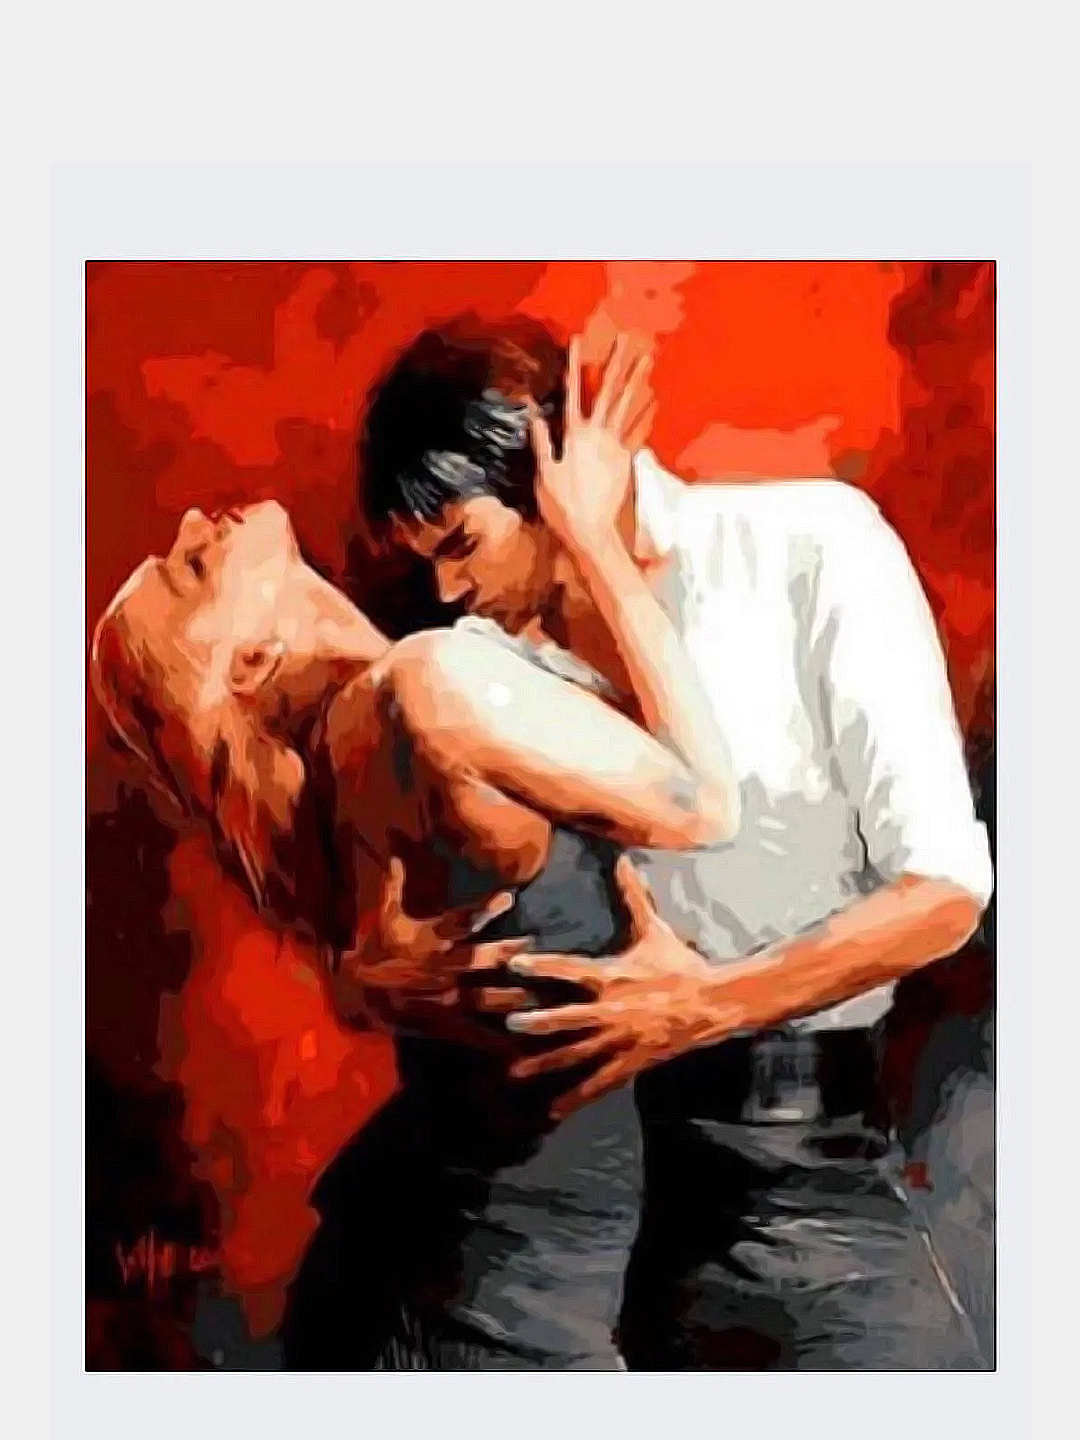 Страстные занятия. Виллем Хаенрайтс художник танго. Художник Willem Haenraets танго. Страсть живопись. Картина "любовь".